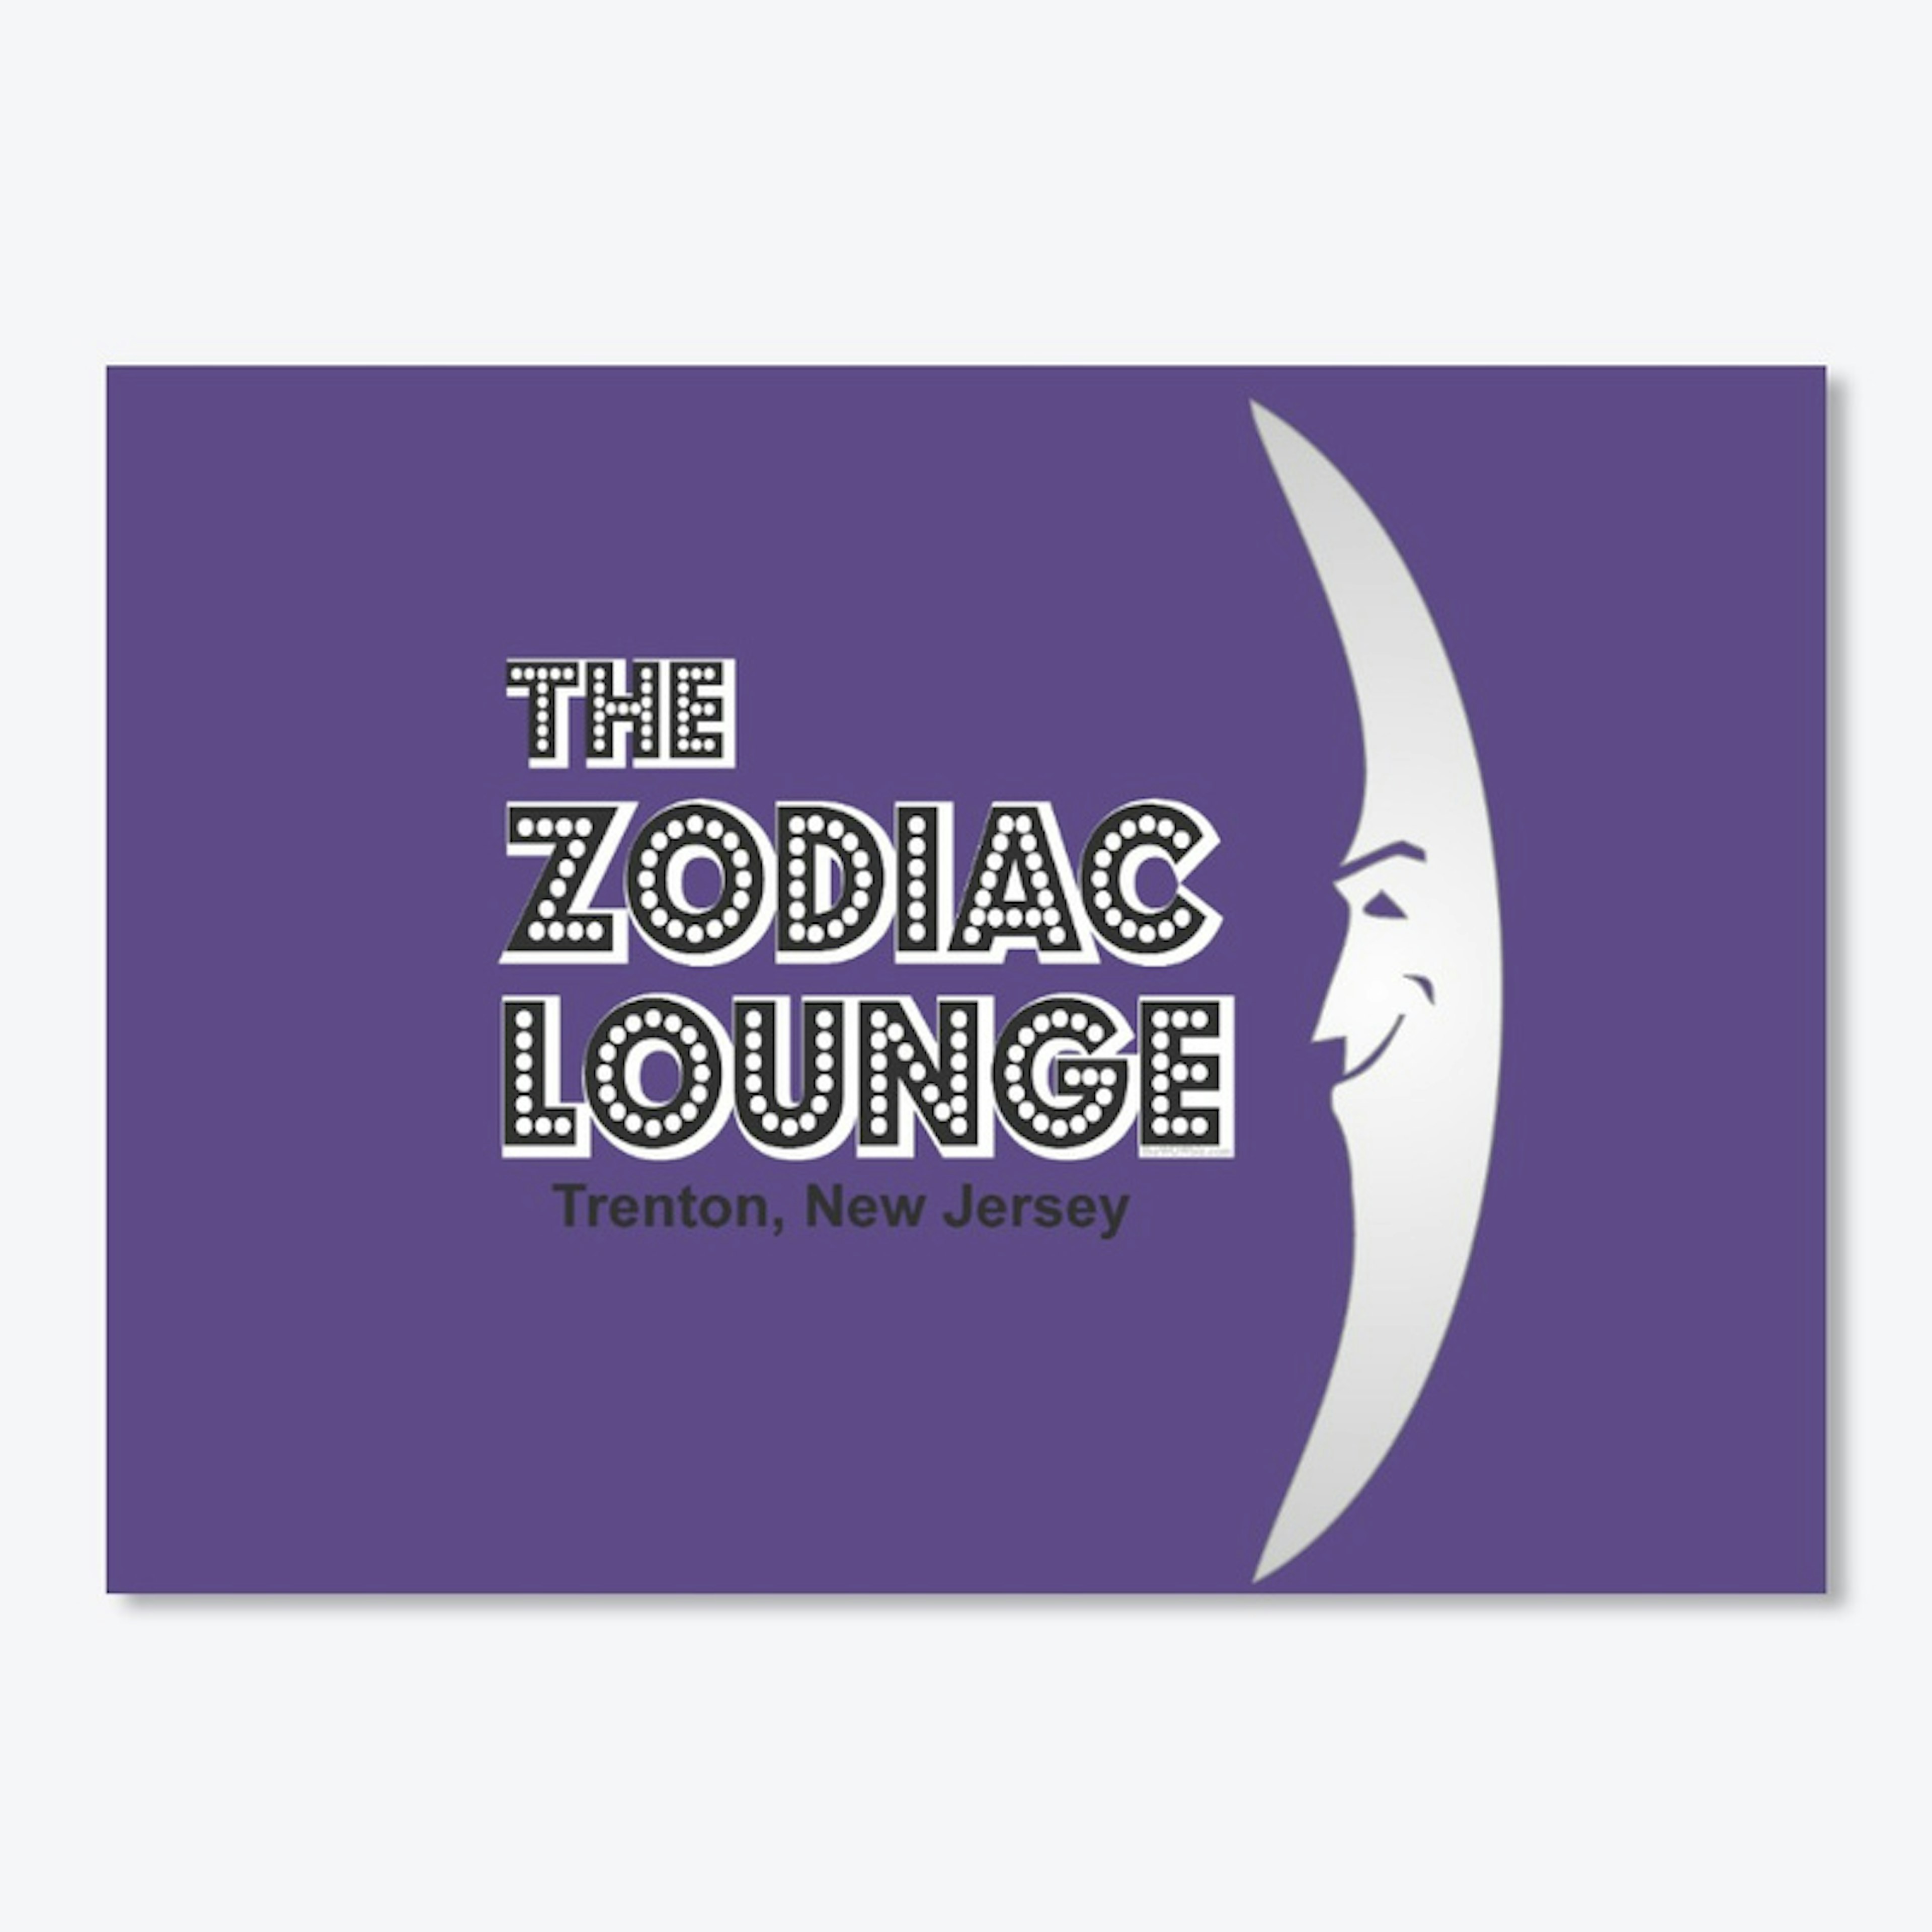 ZodiacLounge